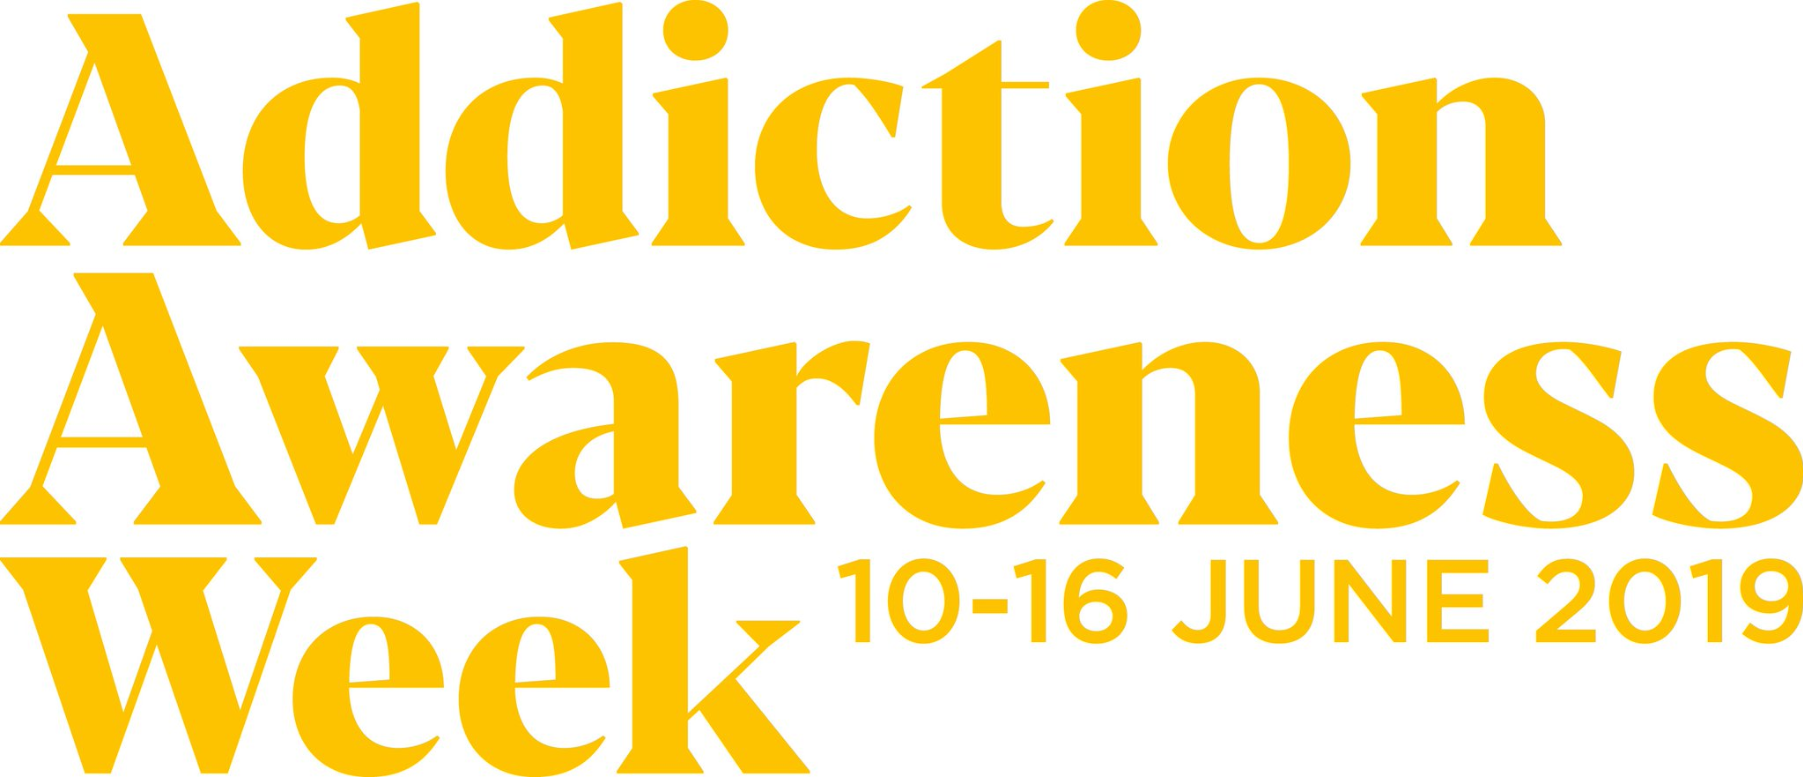 addiction awareness week